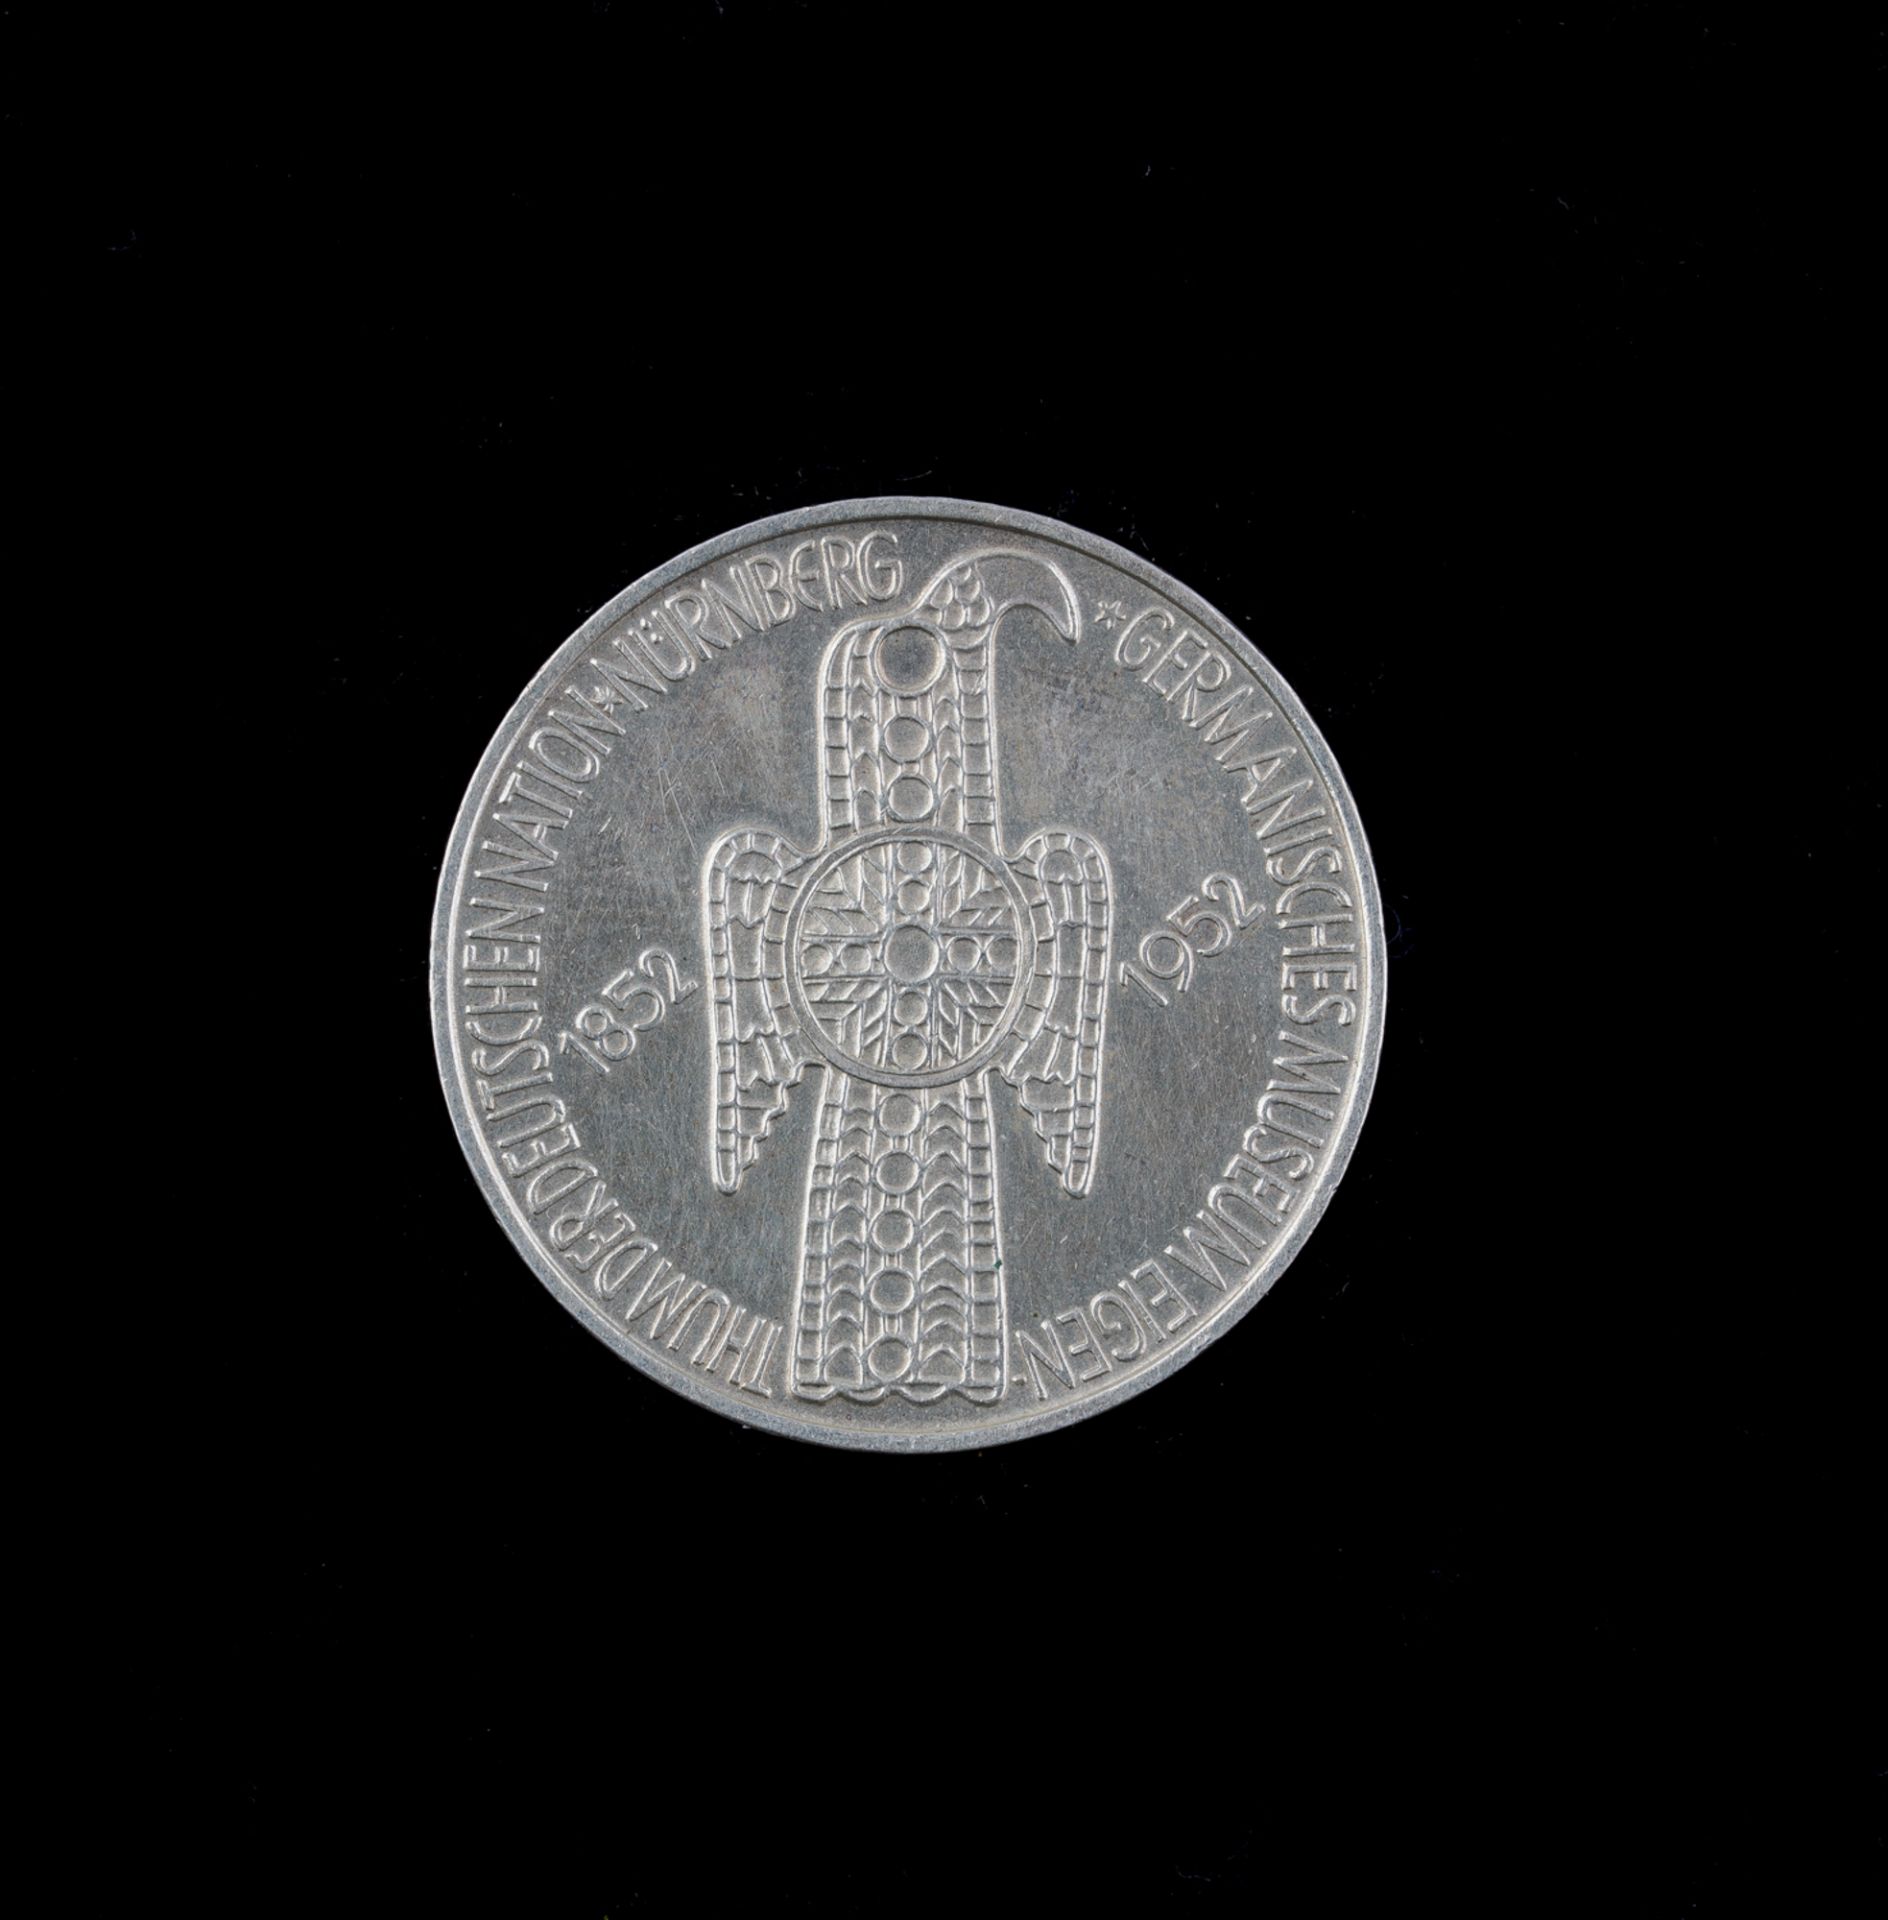 5 Deutsche Mark, 1952 D, Germanisches Museum Nürnberg - Image 2 of 2